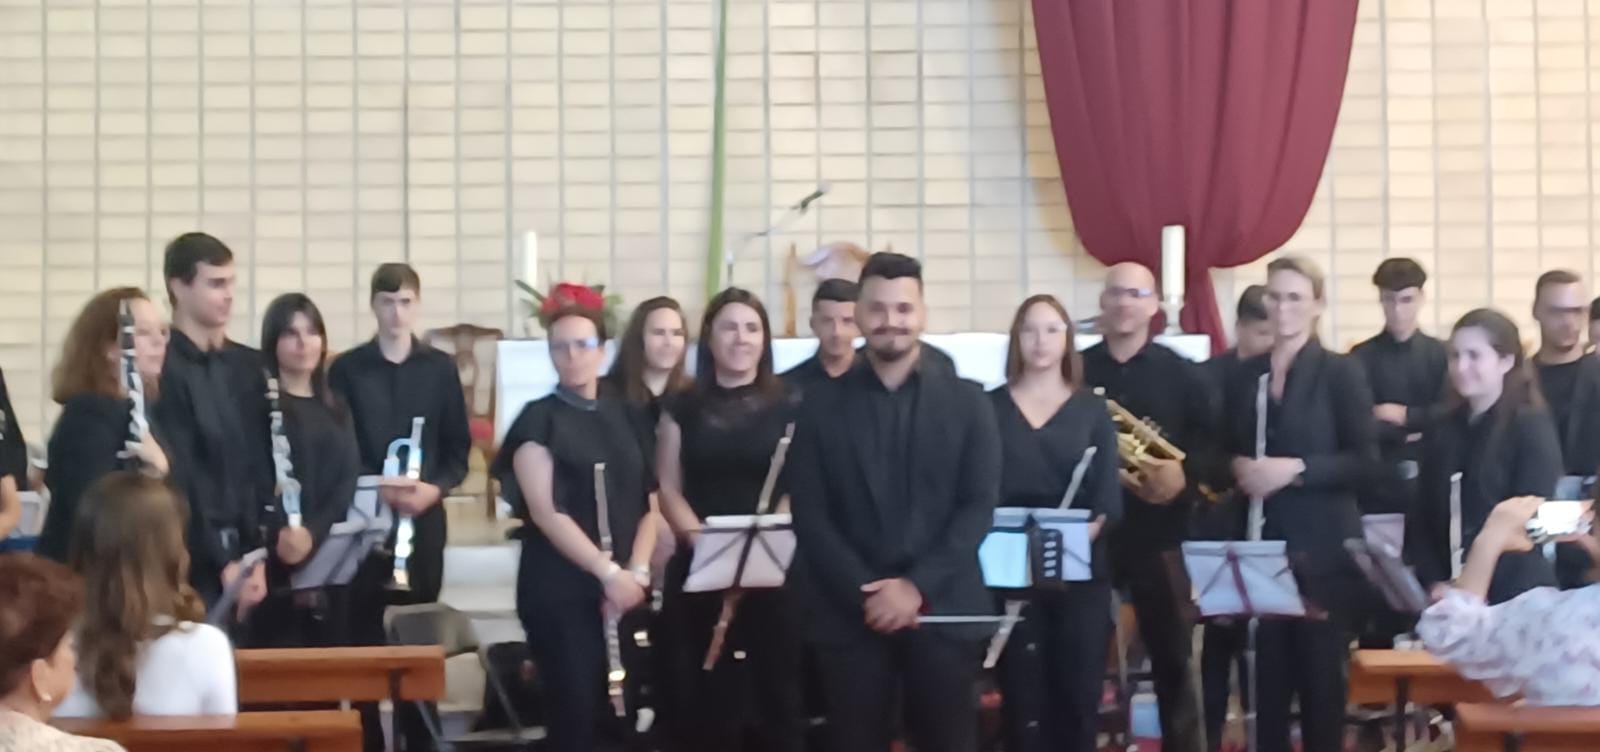 CC de Breña Baja felicita a la Banda Municipal de Música por el magnífico concierto sacro del Domingo de Ramos